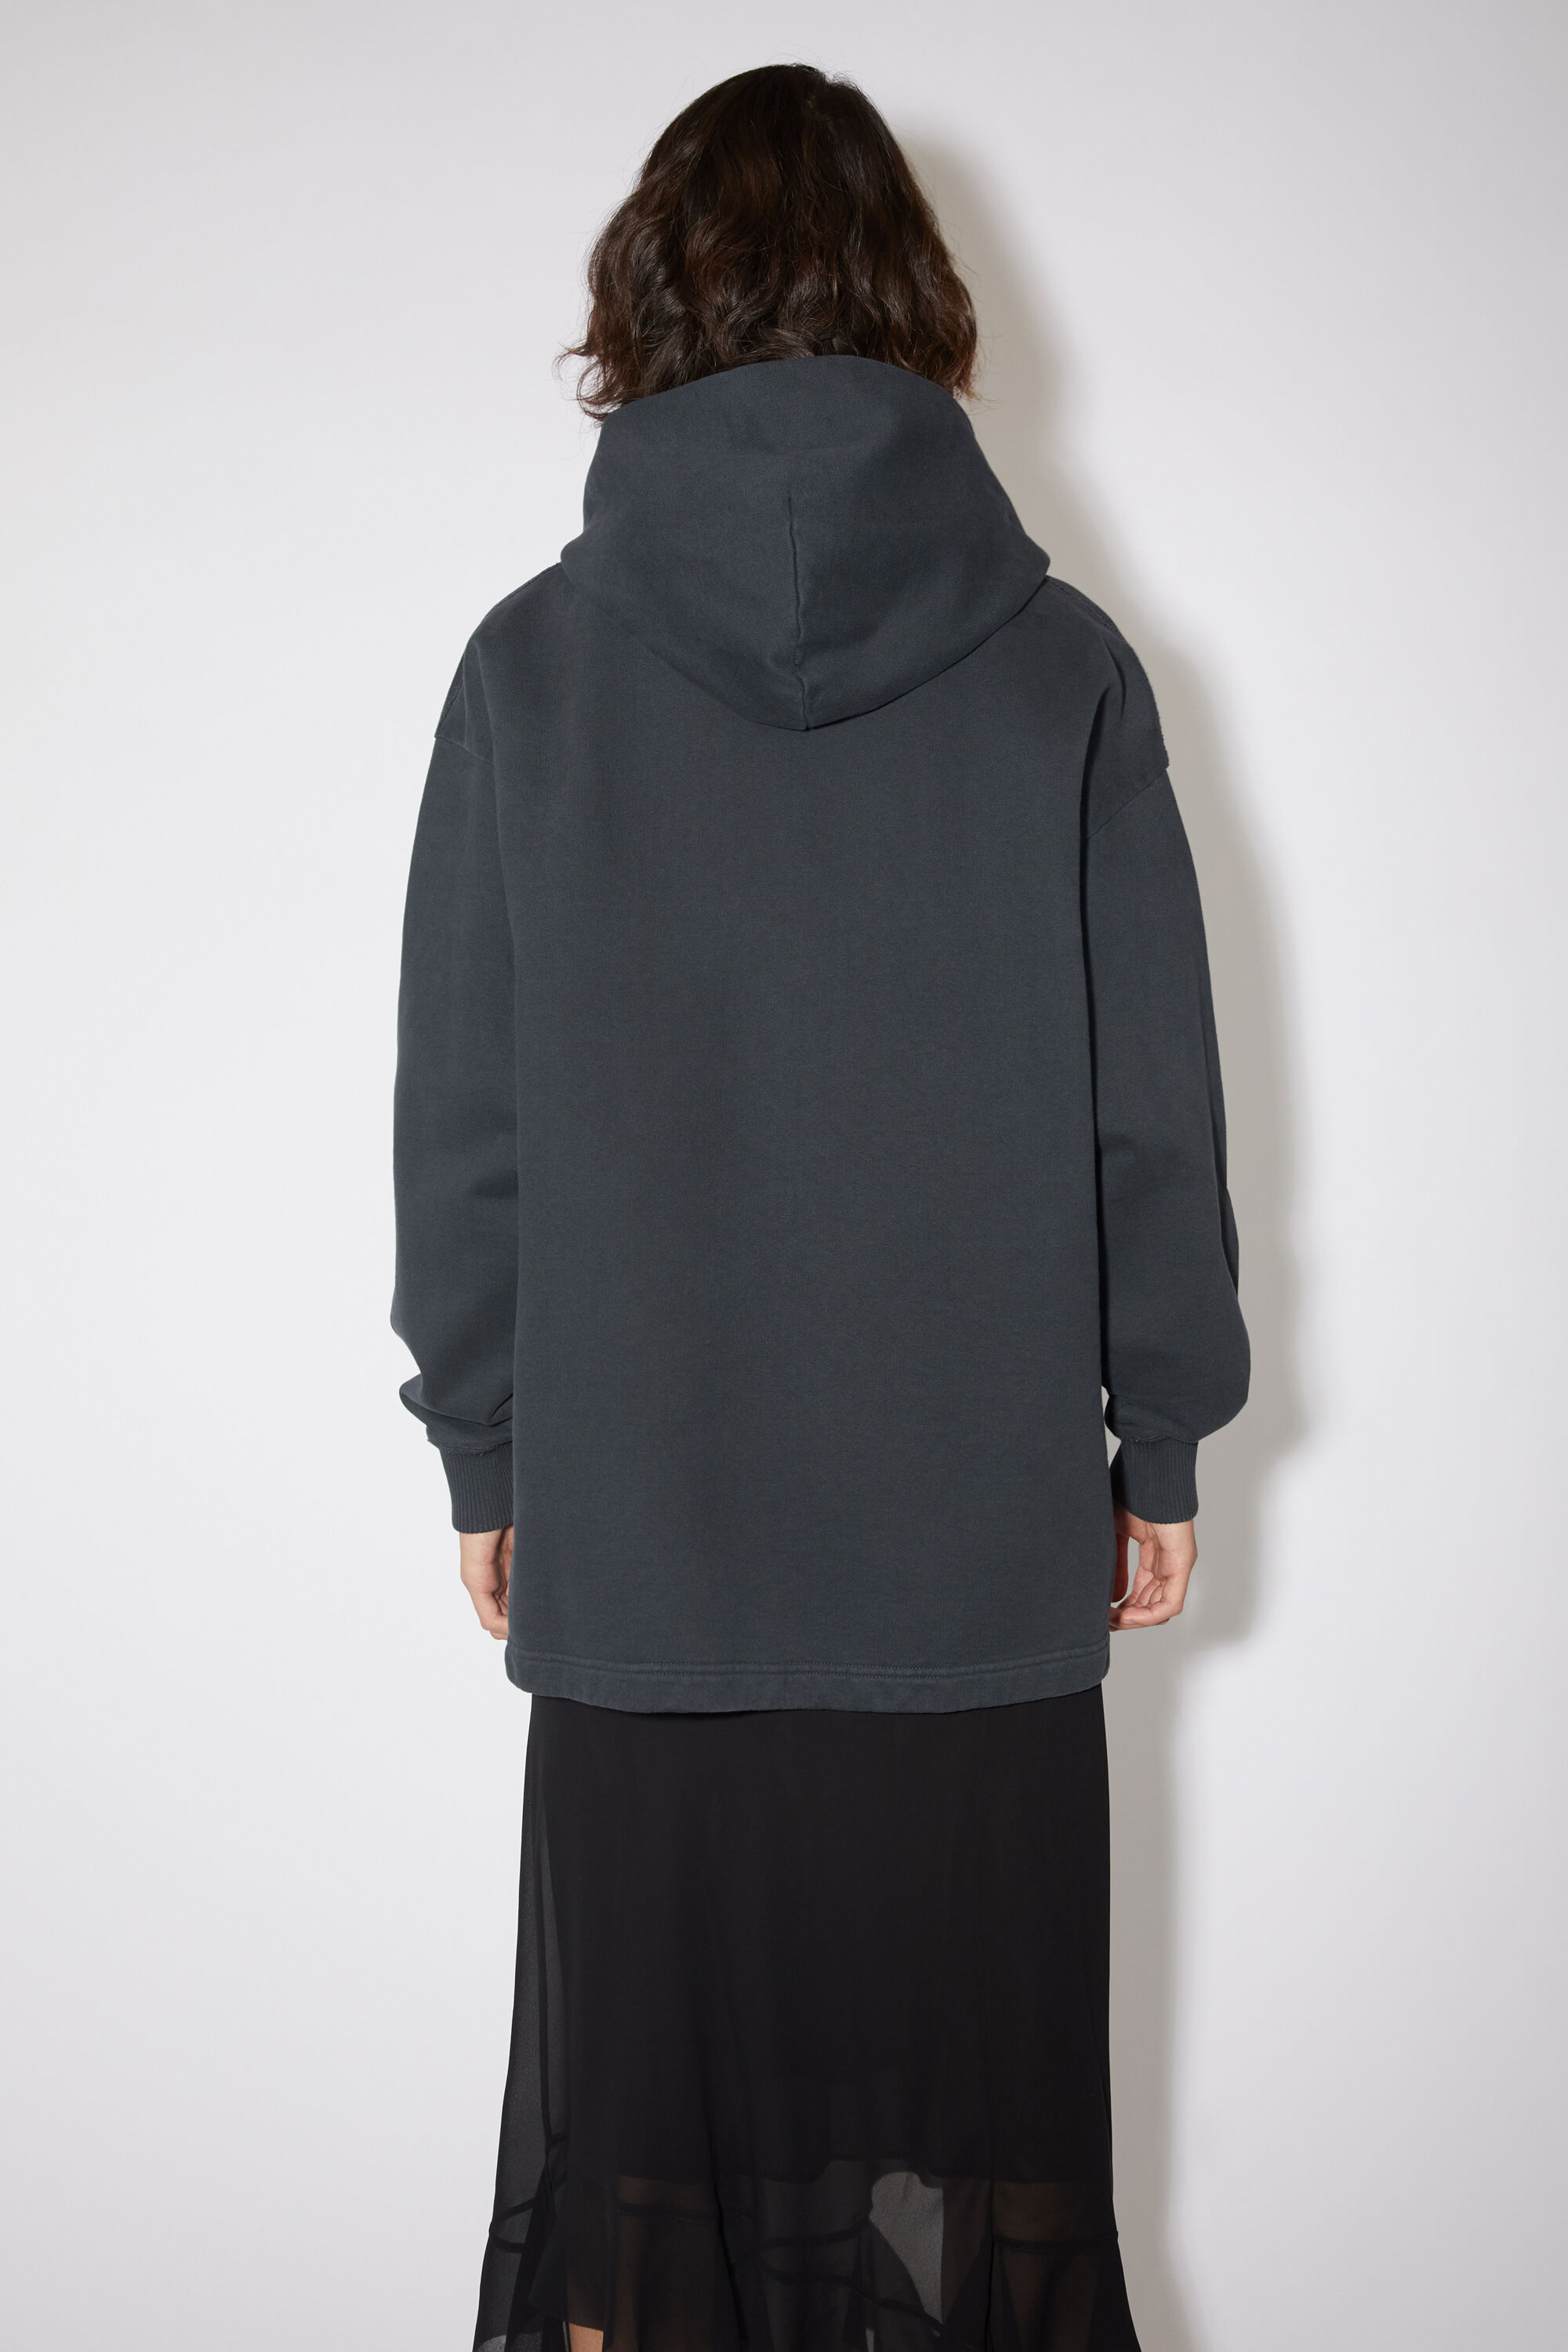 低価HOT ACNE Acne Studios black hoodie sizeXSの通販 by まつたけ's shop｜アクネならラクマ 